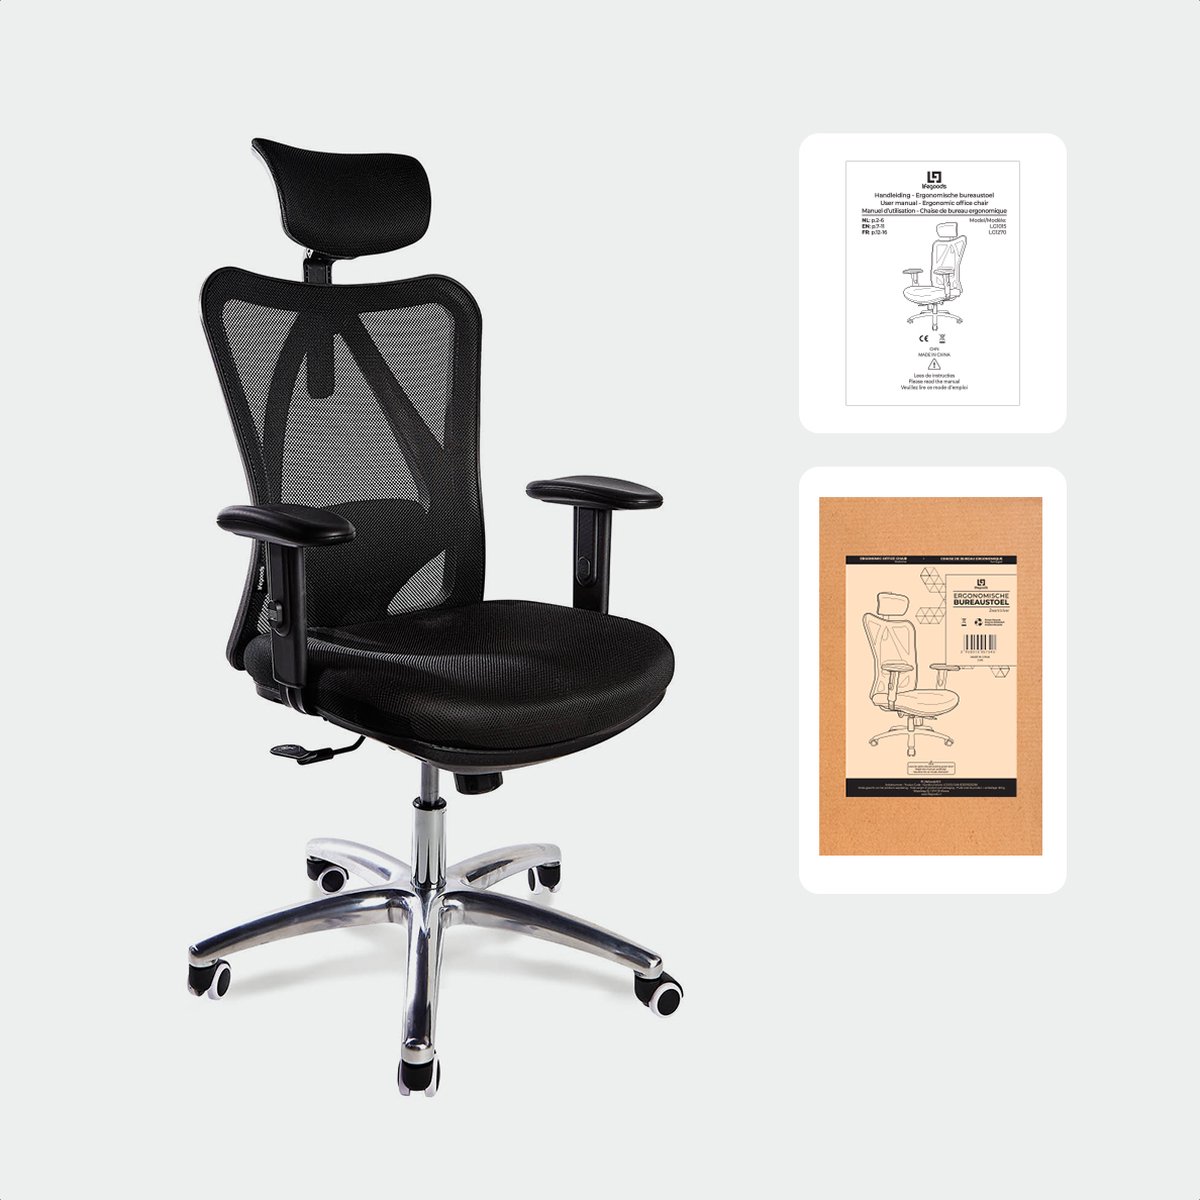 Chaise de bureau ergonomique LifeGoods - Entièrement réglable